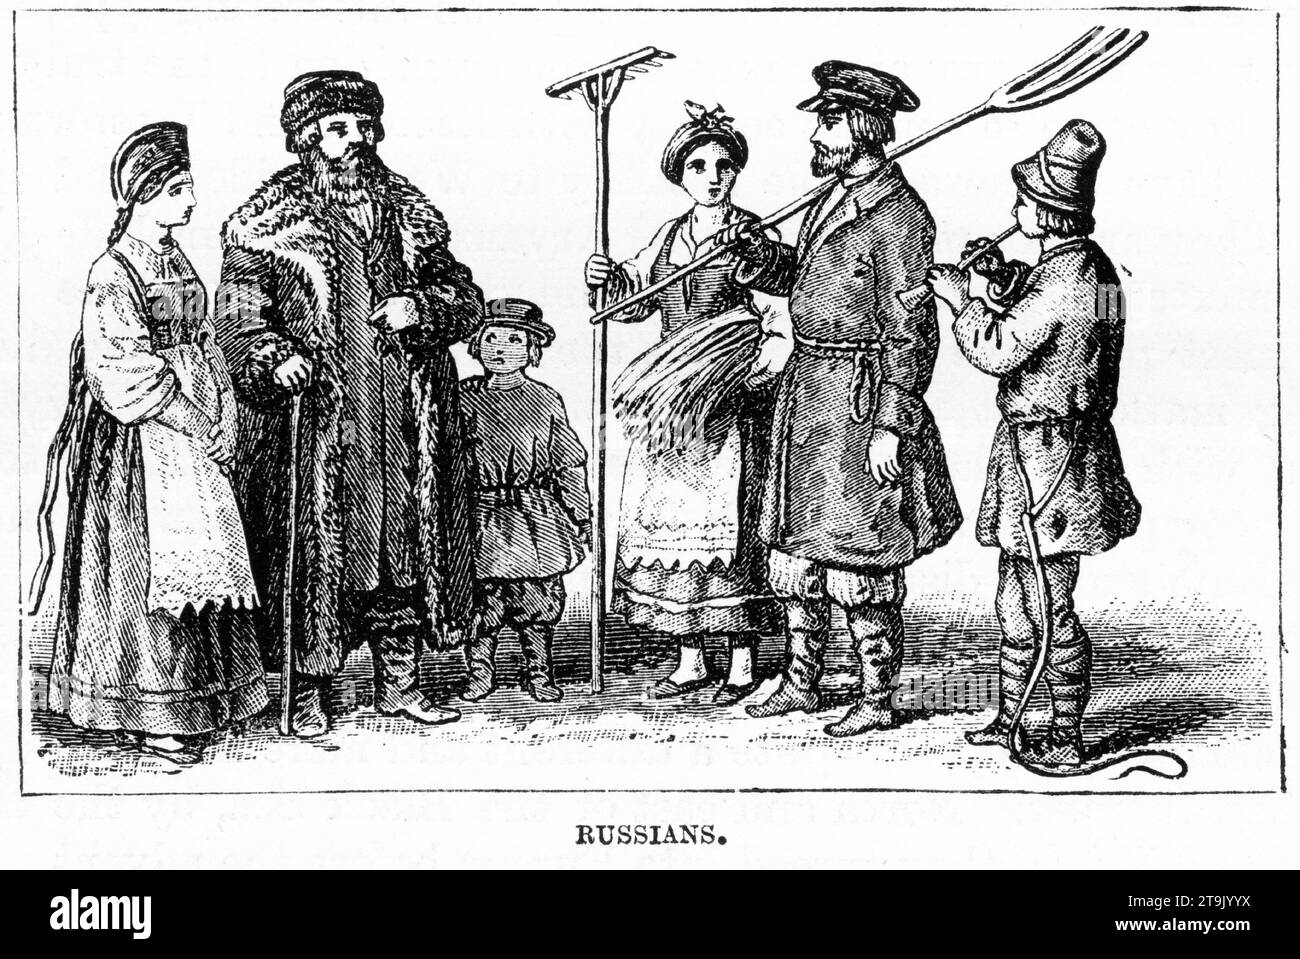 Ritratto inciso di un gruppo di contadini russi in costumi tradizionali. Pubblicato intorno al 1887 Foto Stock